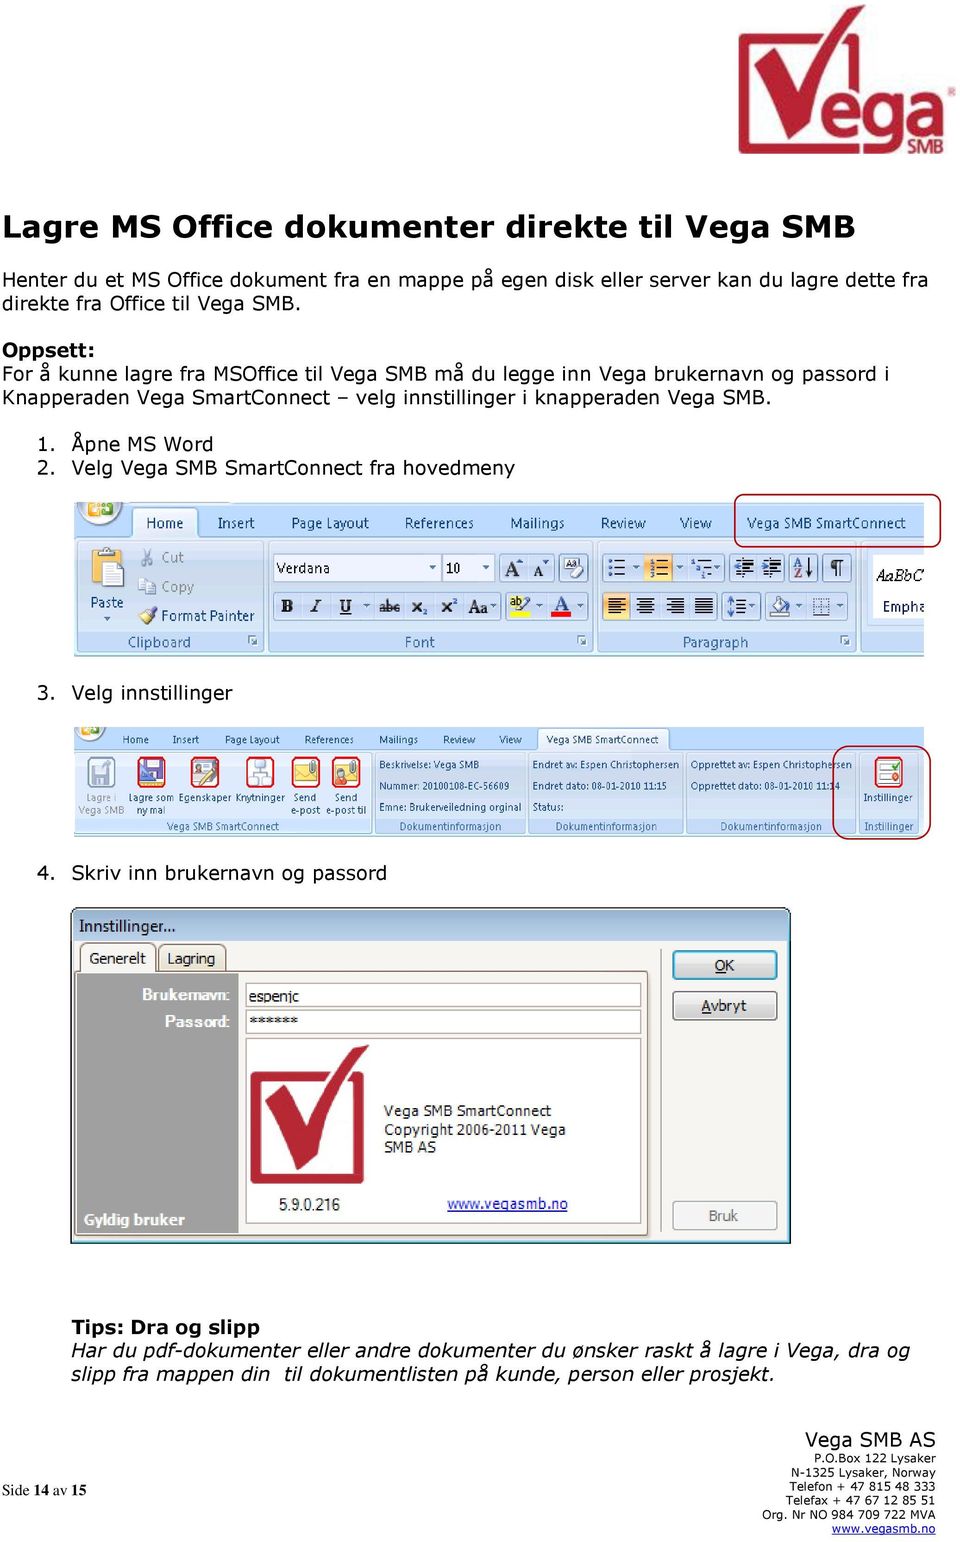 Oppsett: For å kunne lagre fra MSOffice til Vega SMB må du legge inn Vega brukernavn og passord i Knapperaden Vega SmartConnect velg innstillinger i knapperaden